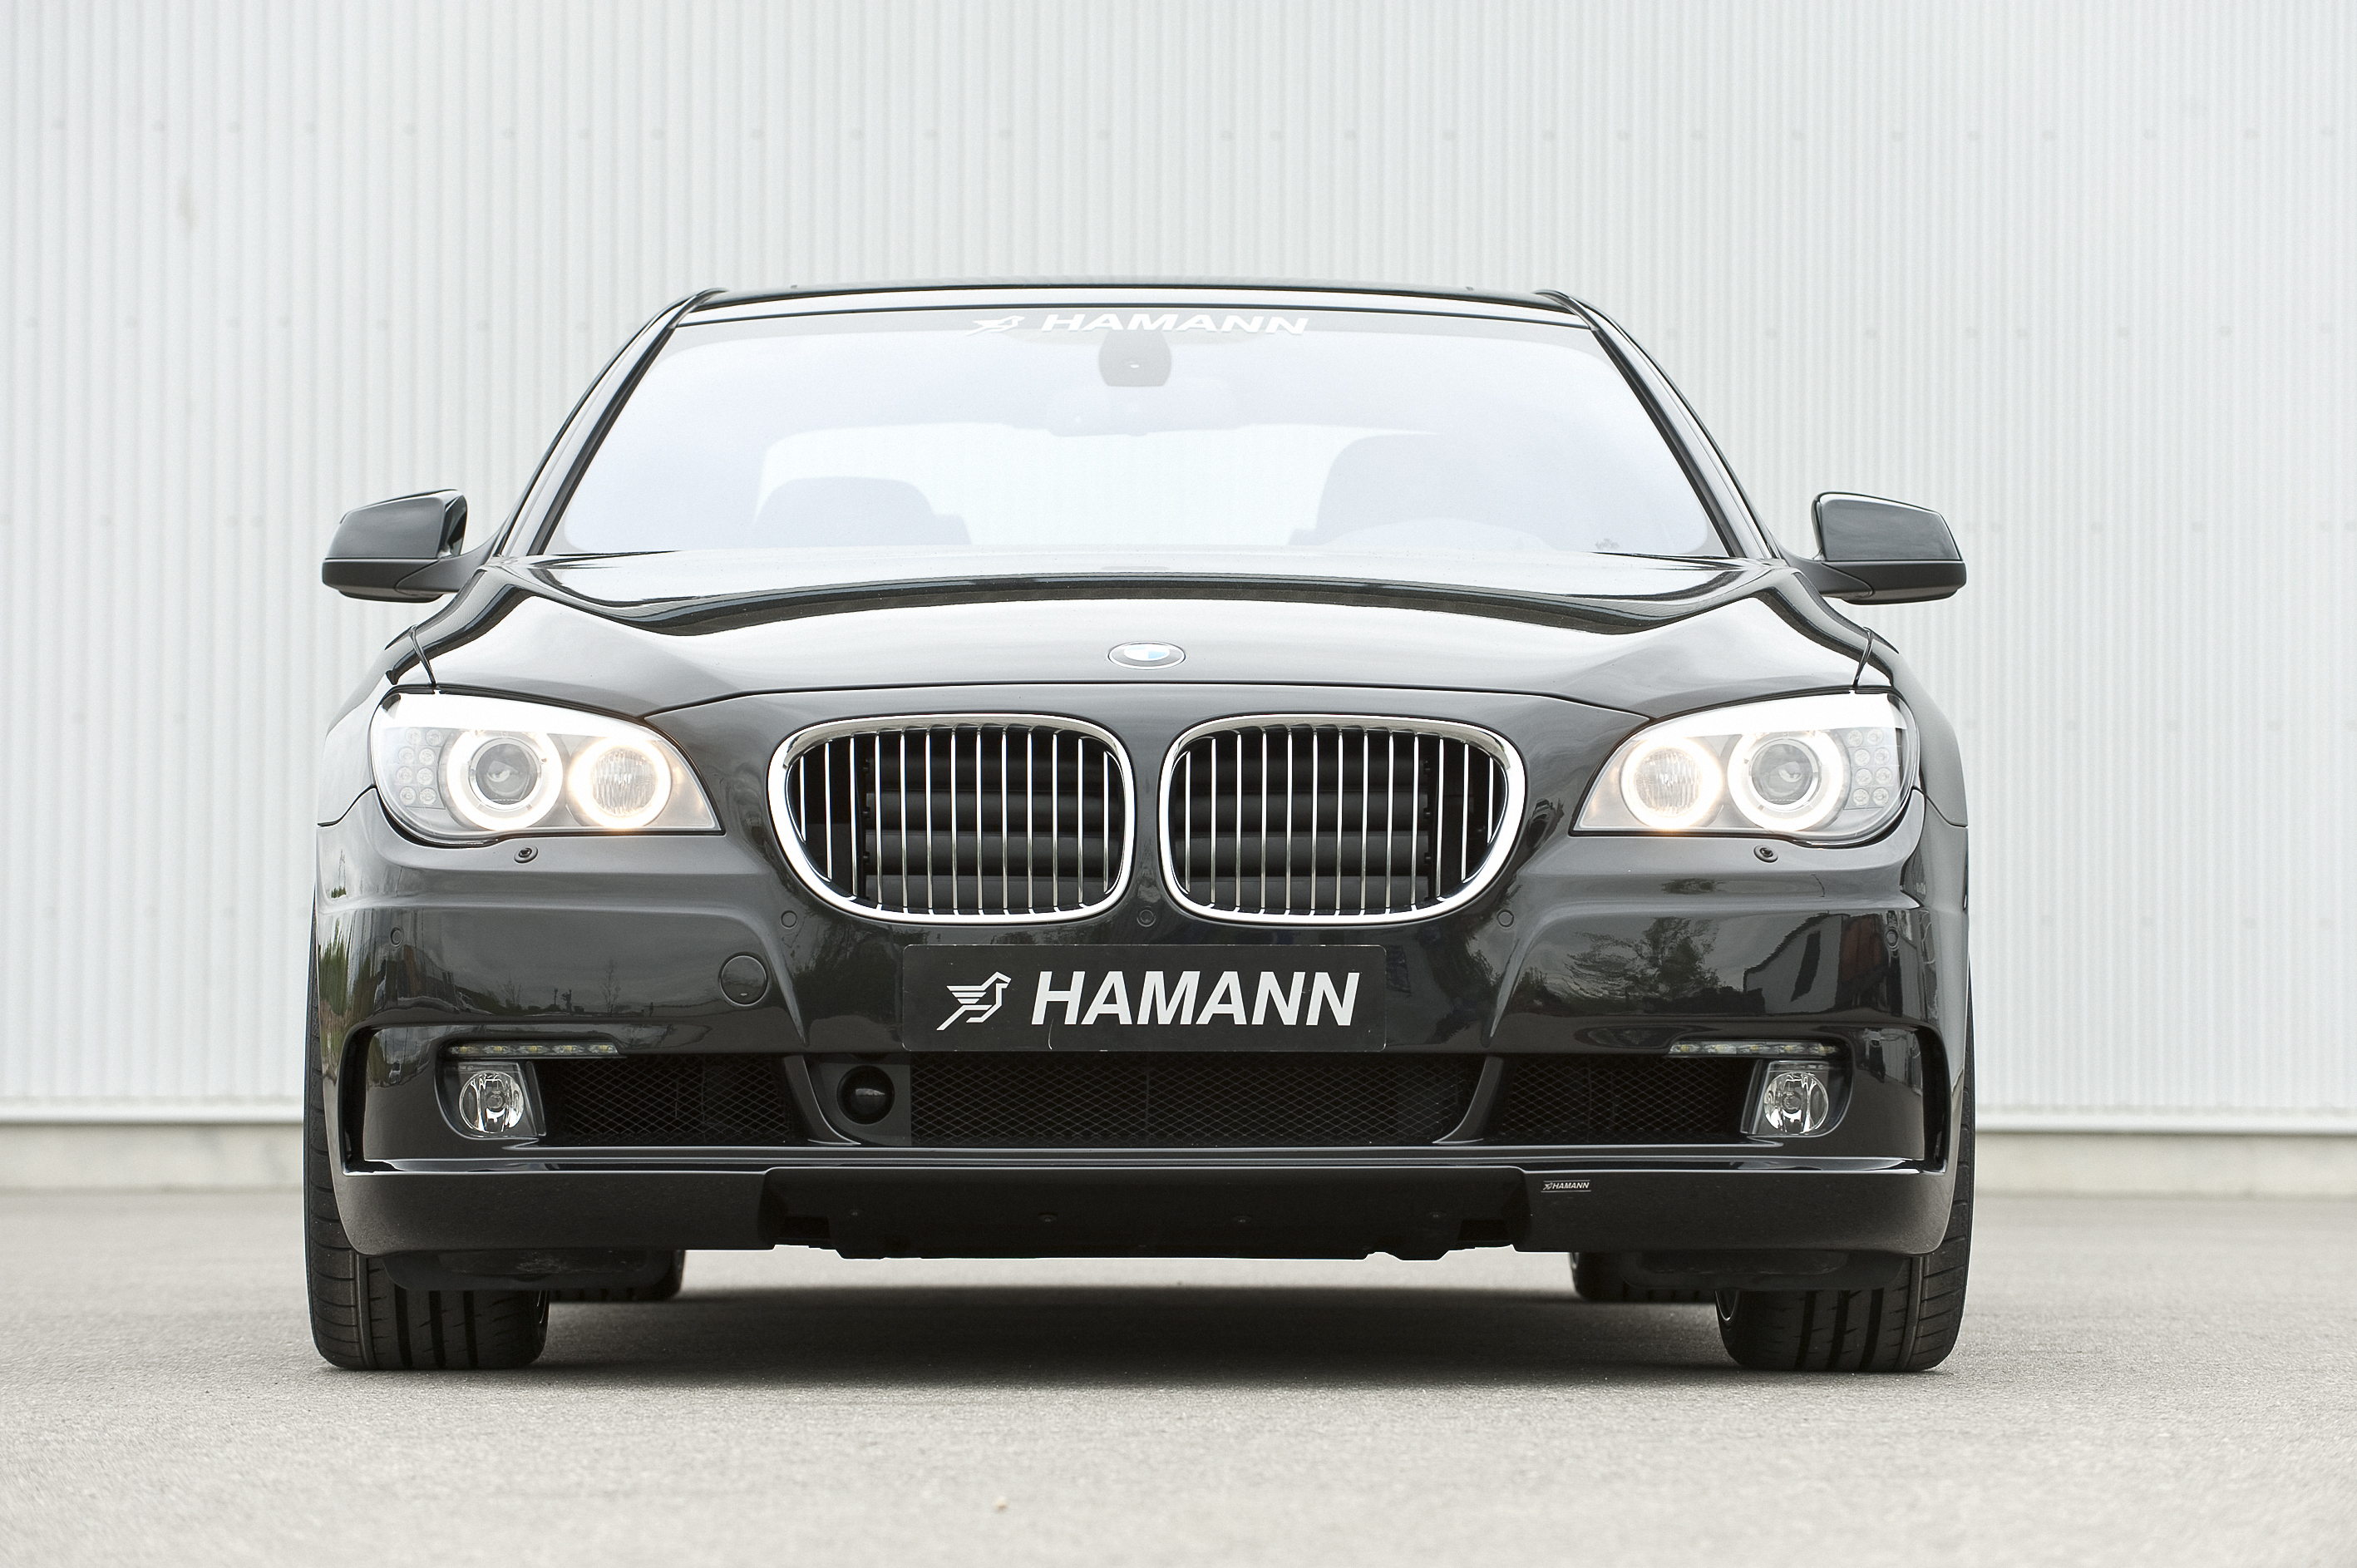 BMW, cars, Hamann - desktop wallpaper